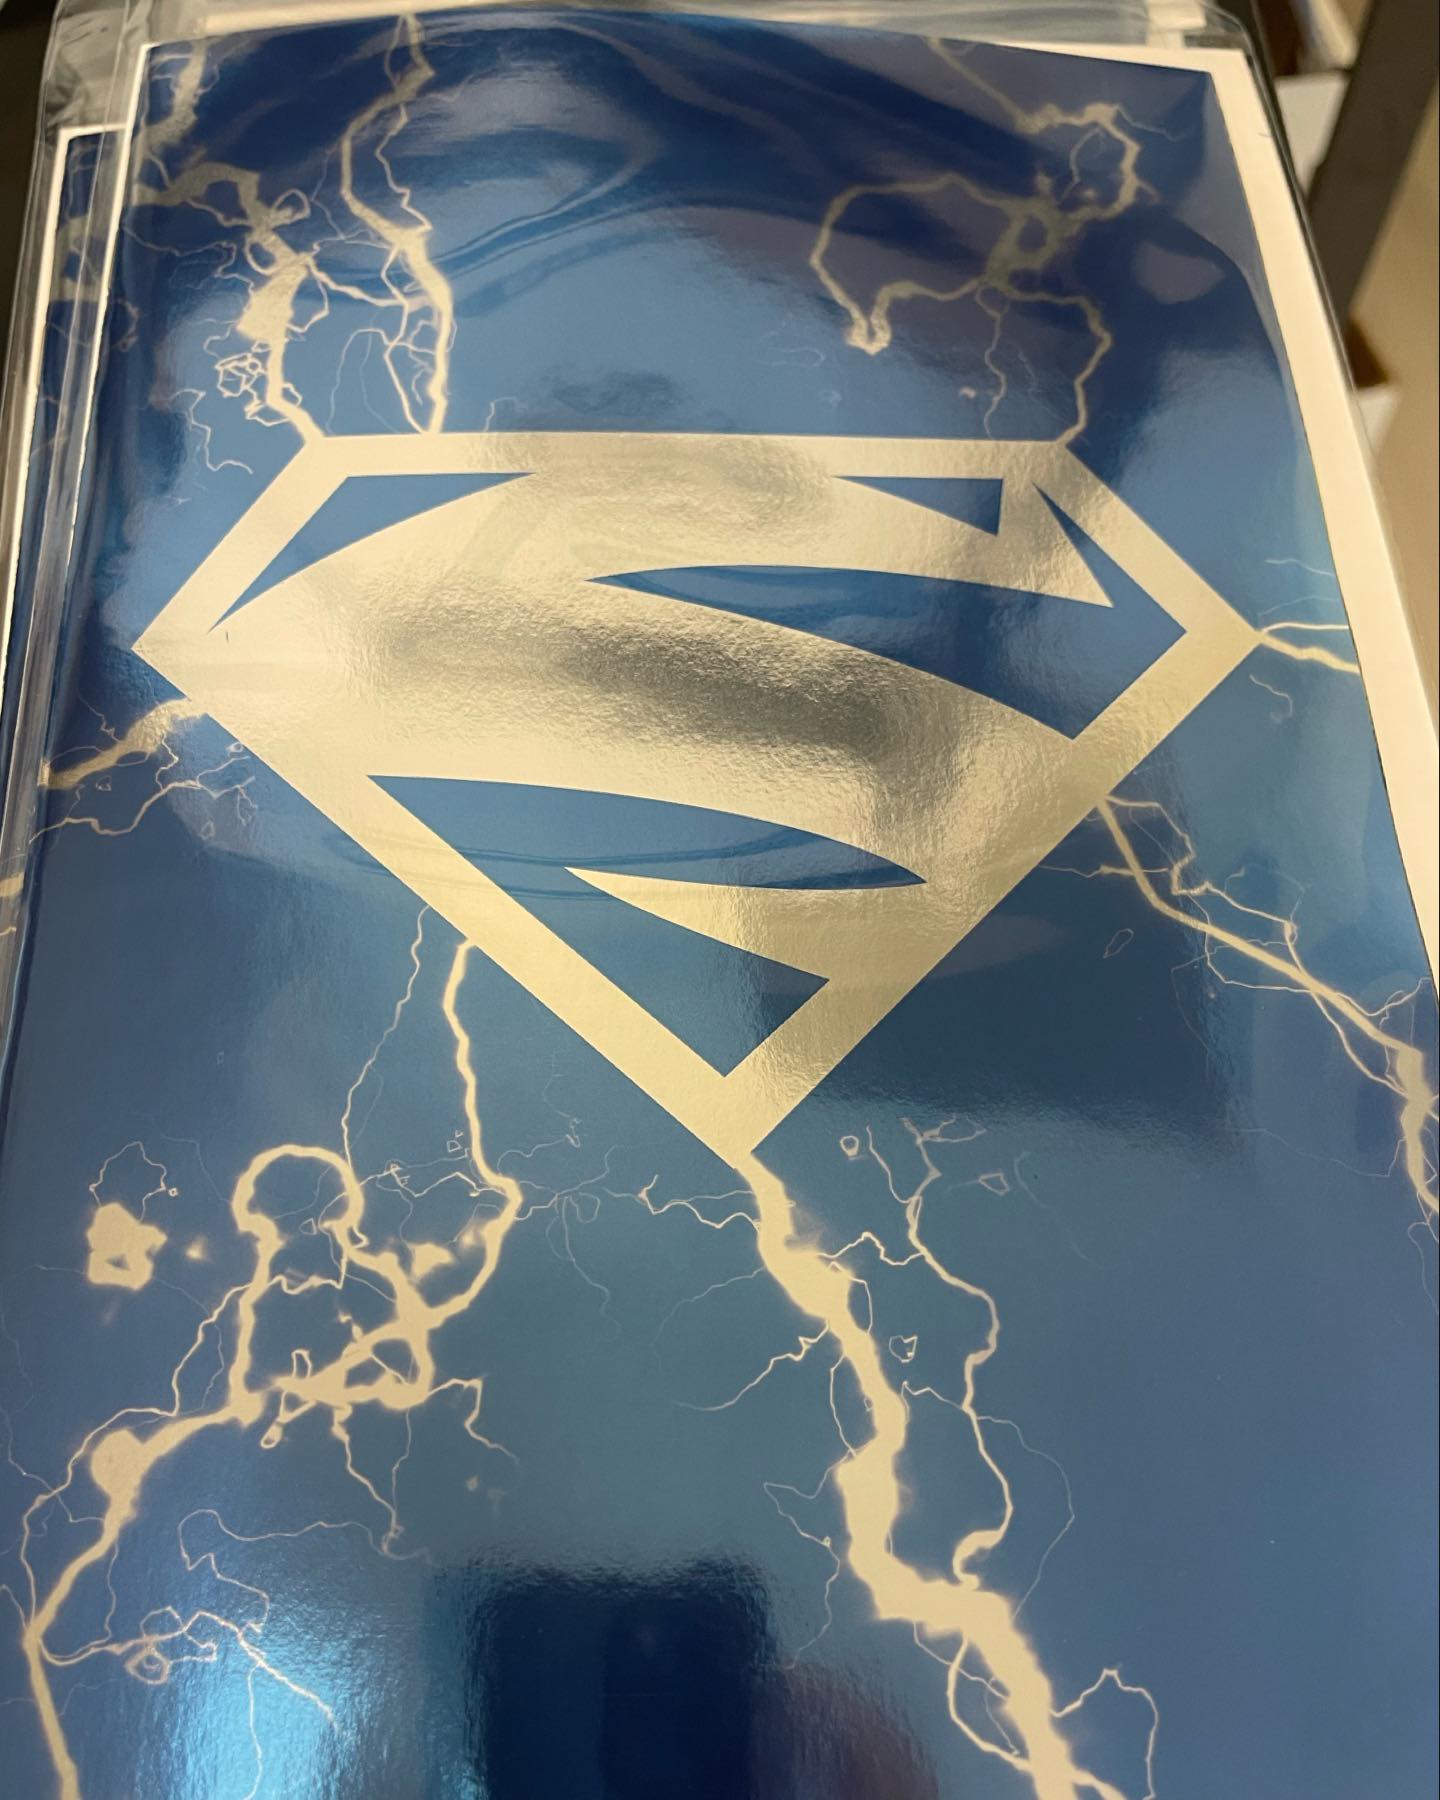 ADVENTURES OF SUPERMAN JON KENT #1 ELECTRIC BLUE FOIL EXCLUSIVE VARIANT (LIMIT 2)